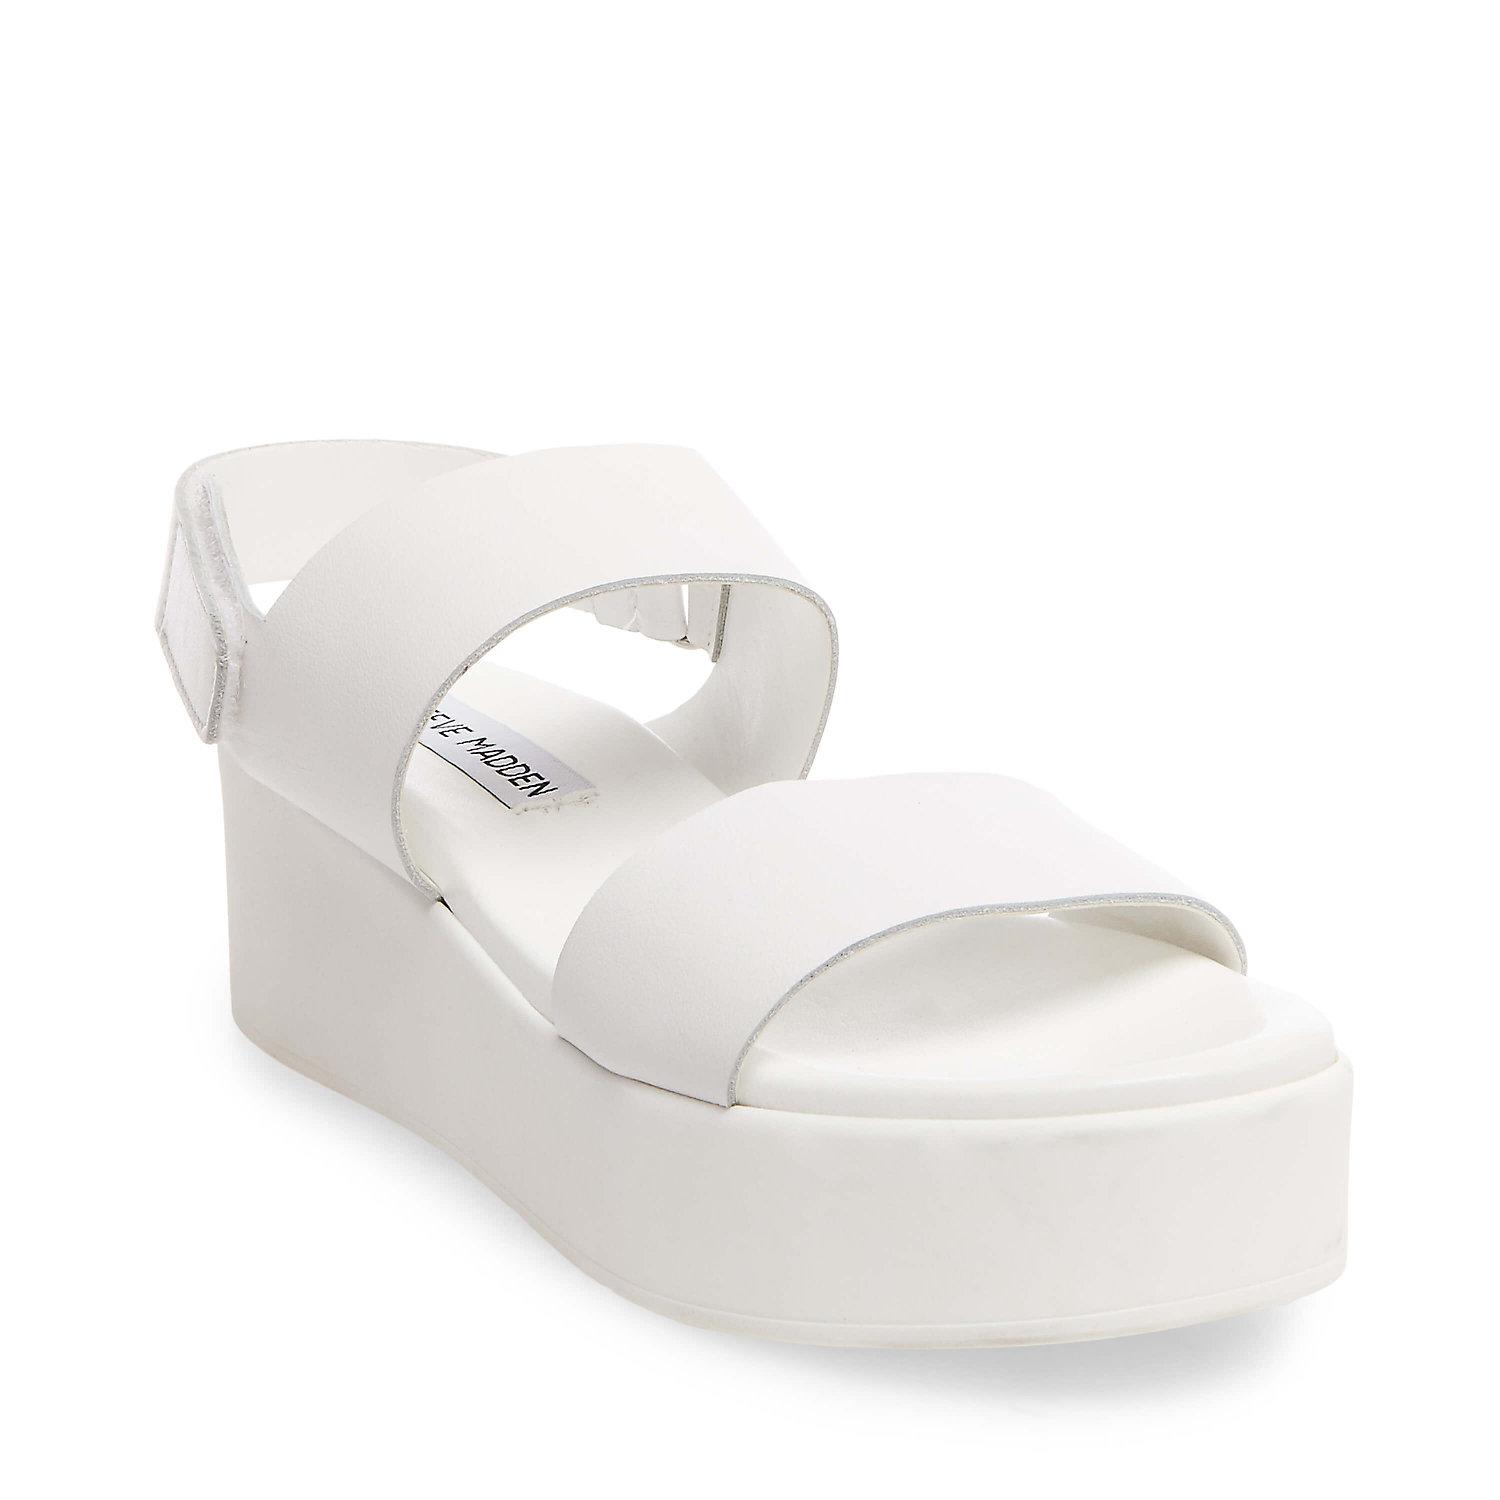 rachel shoes white sandals